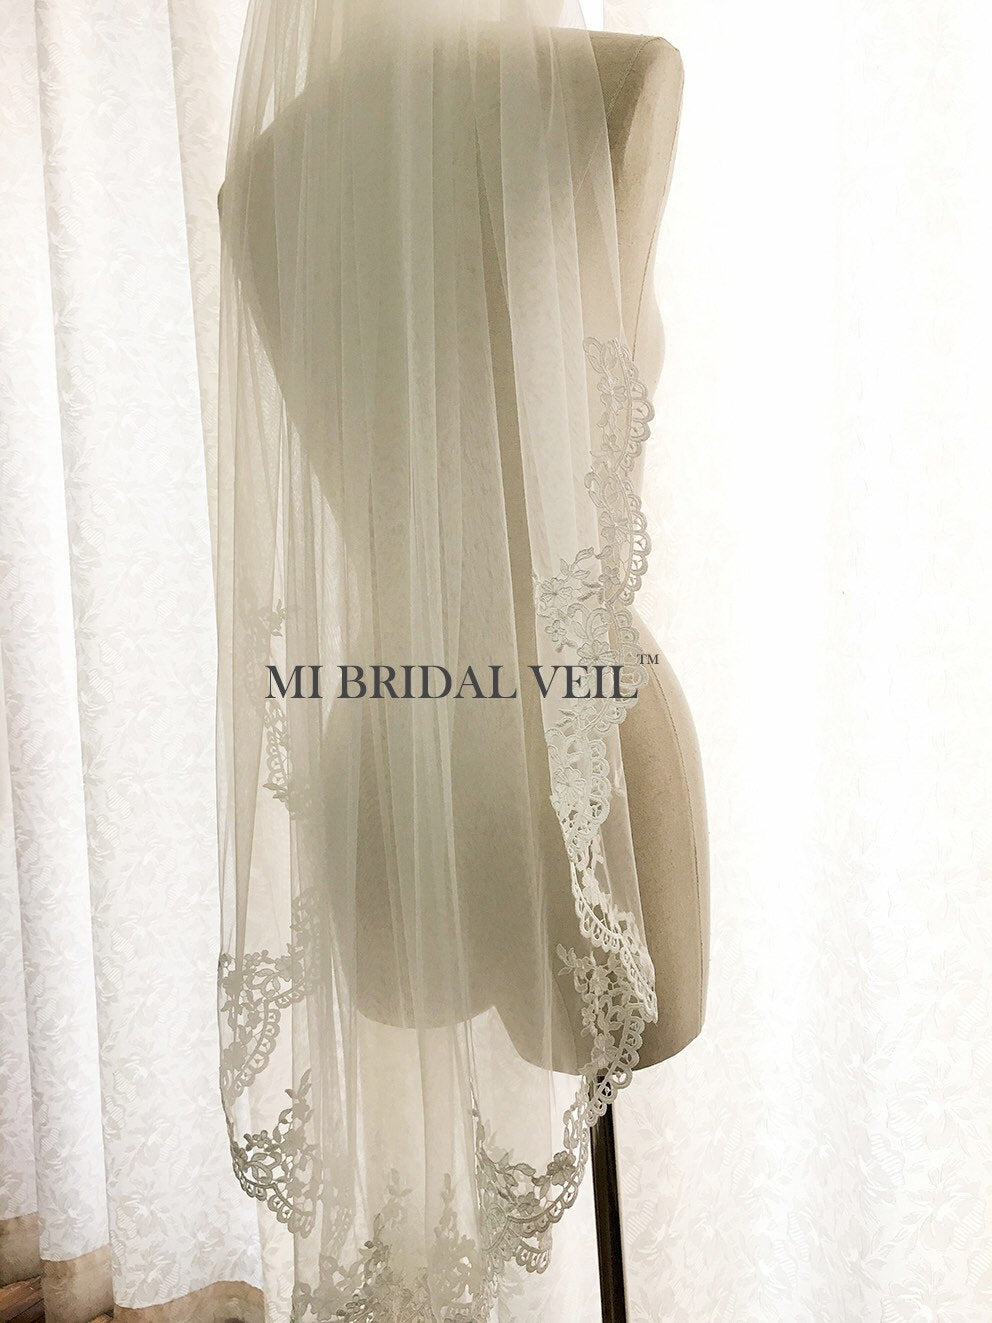 Lace Wedding Veil, Venice Crochet Fingertip Lace Bridal Veil, Lace at Chest, Mi Bridal